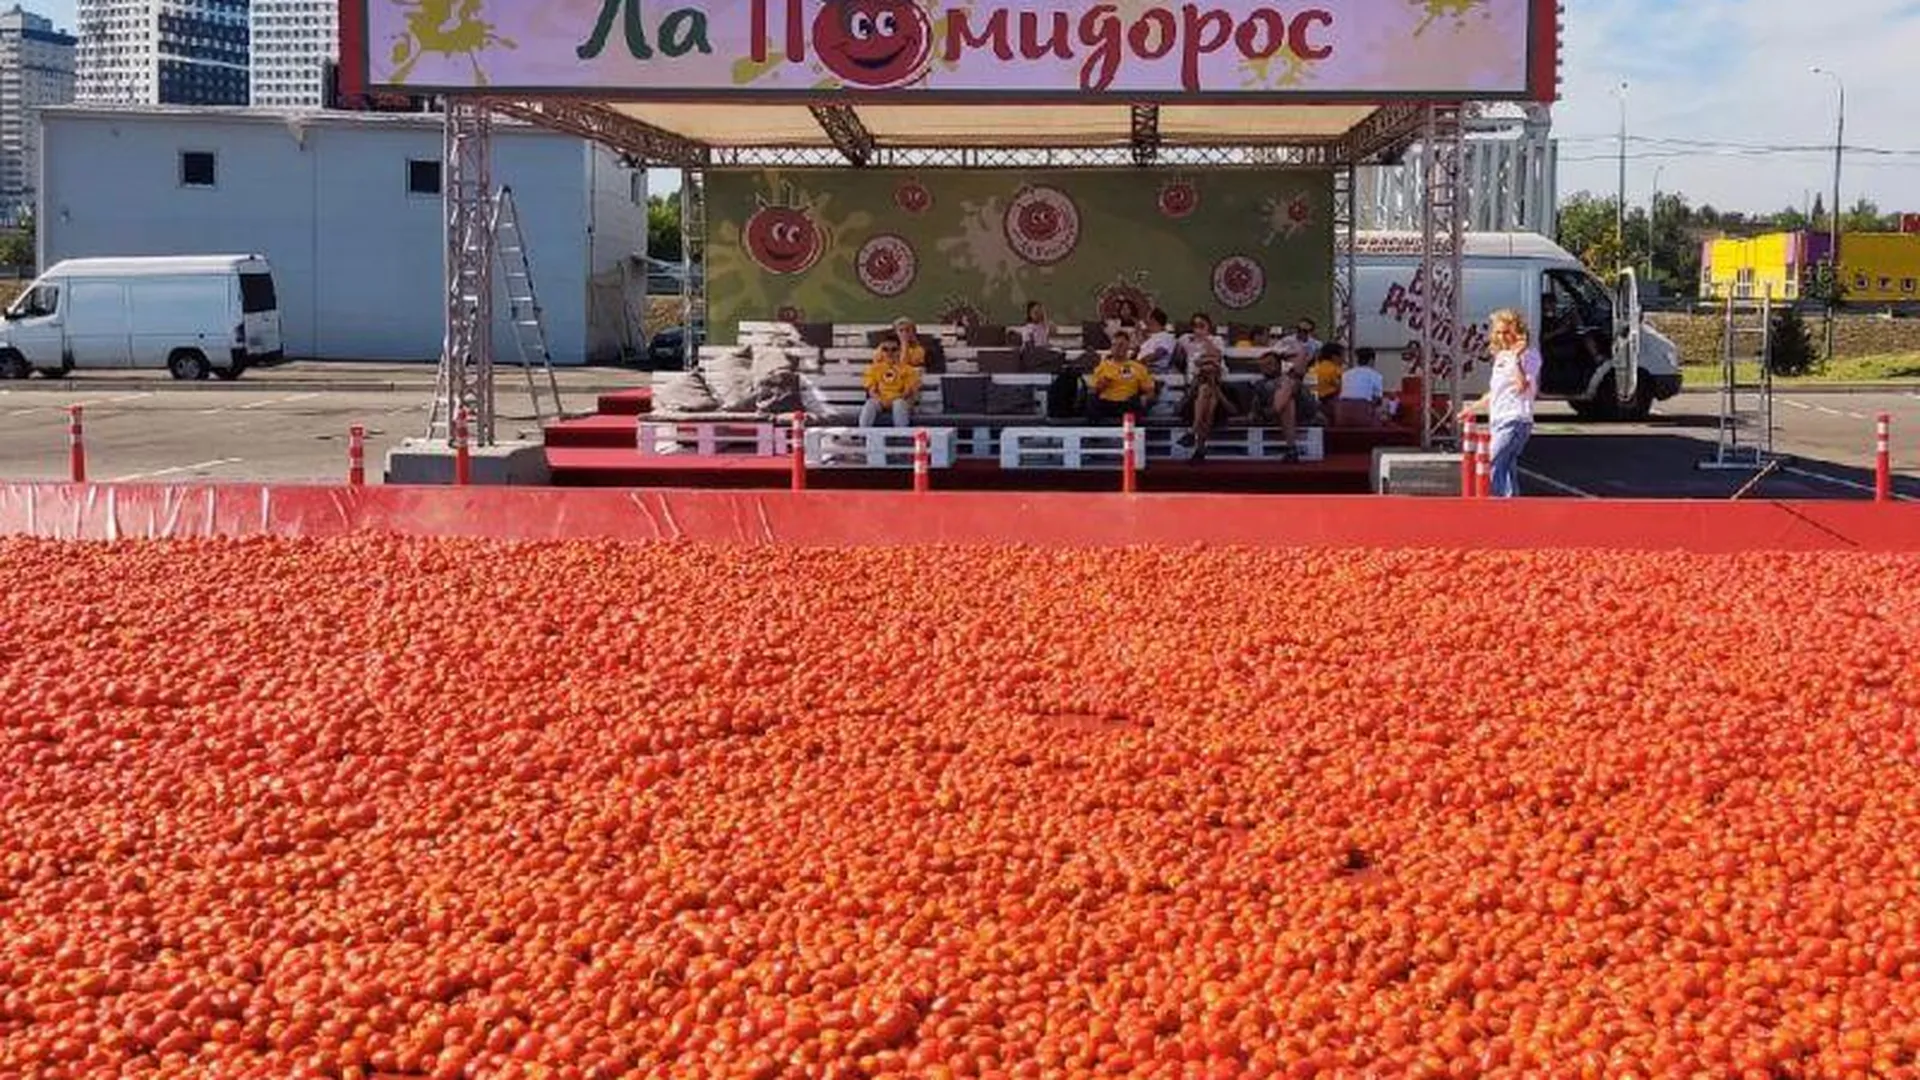 Самбурская и бассейн с помидорами: новый российский фильм снимают в Пушкино